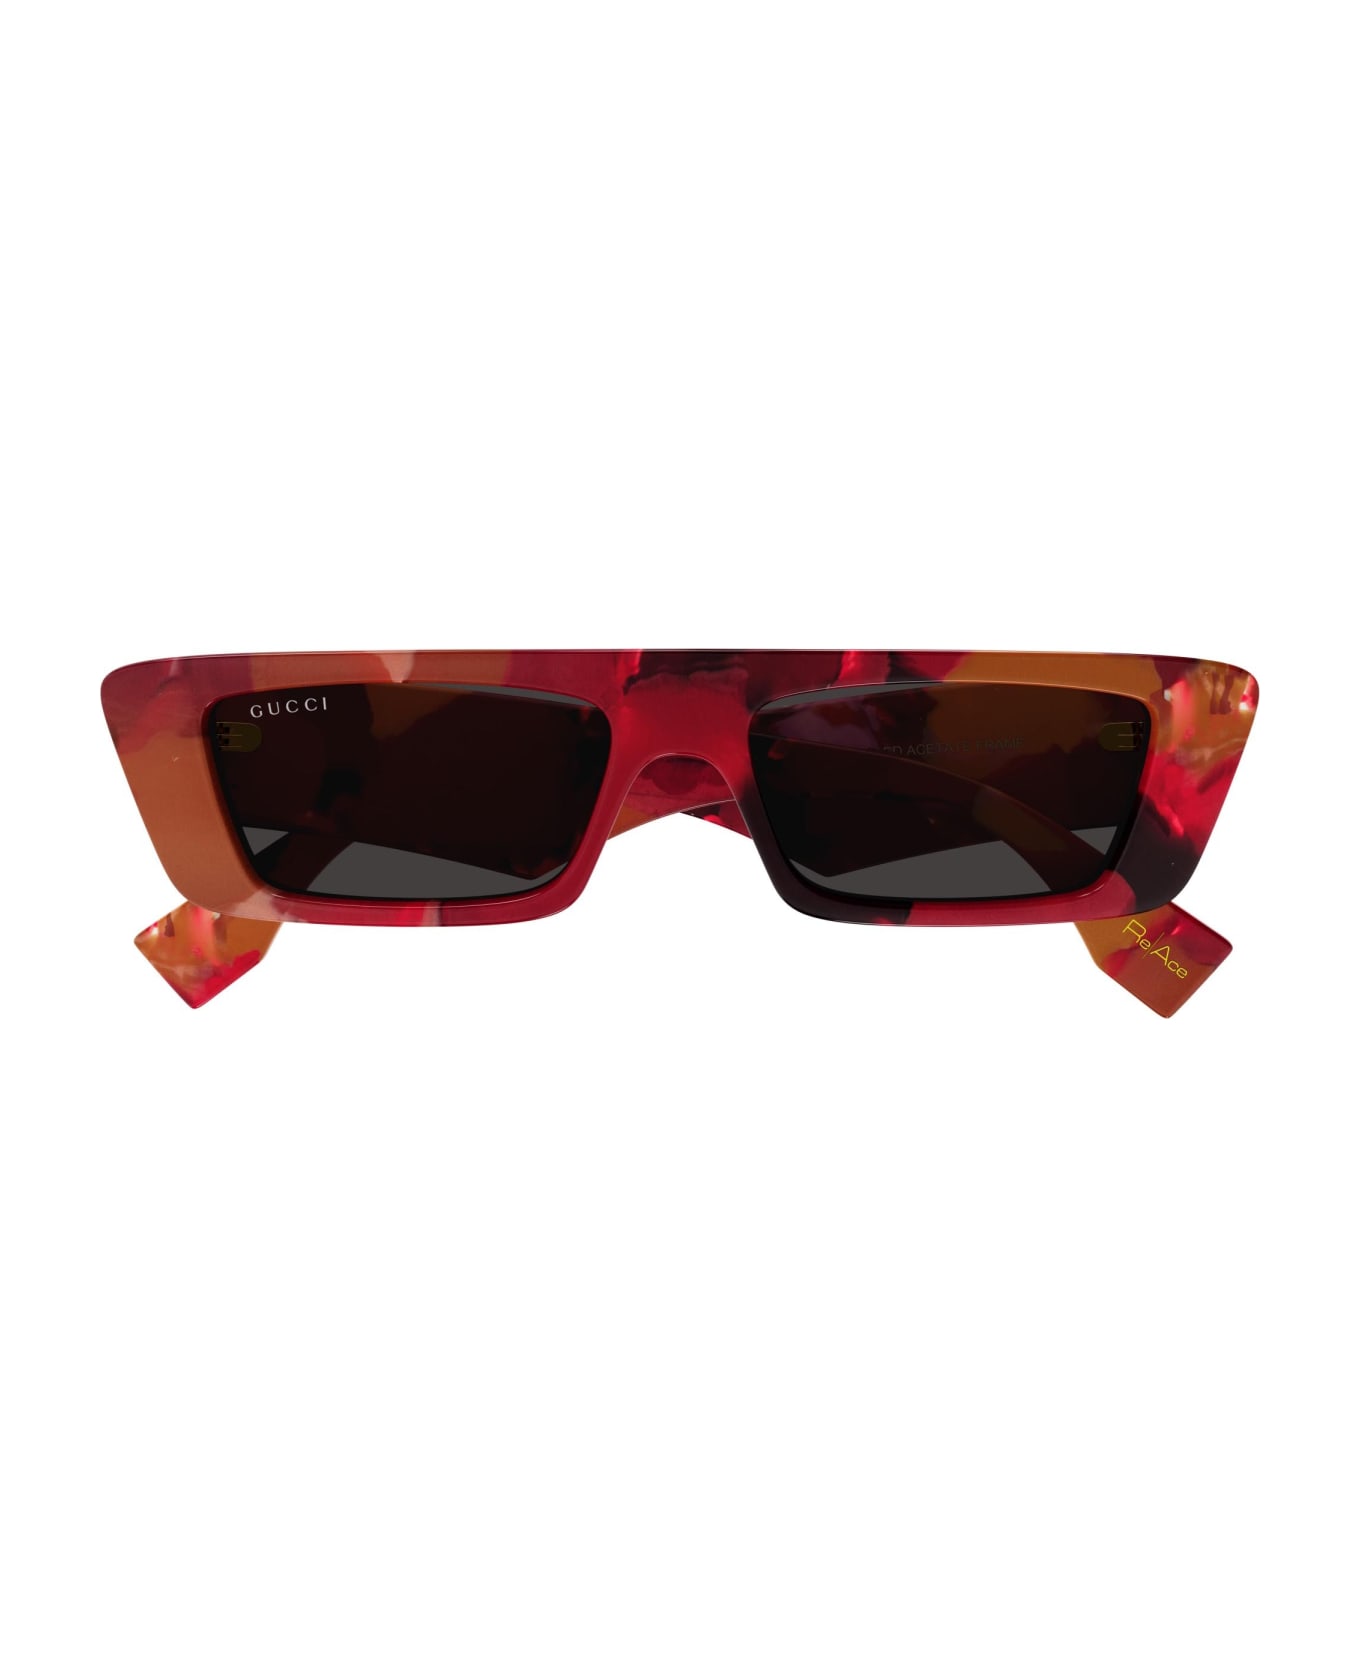 Gucci Eyewear Sunglasses - Rosso/Grigio